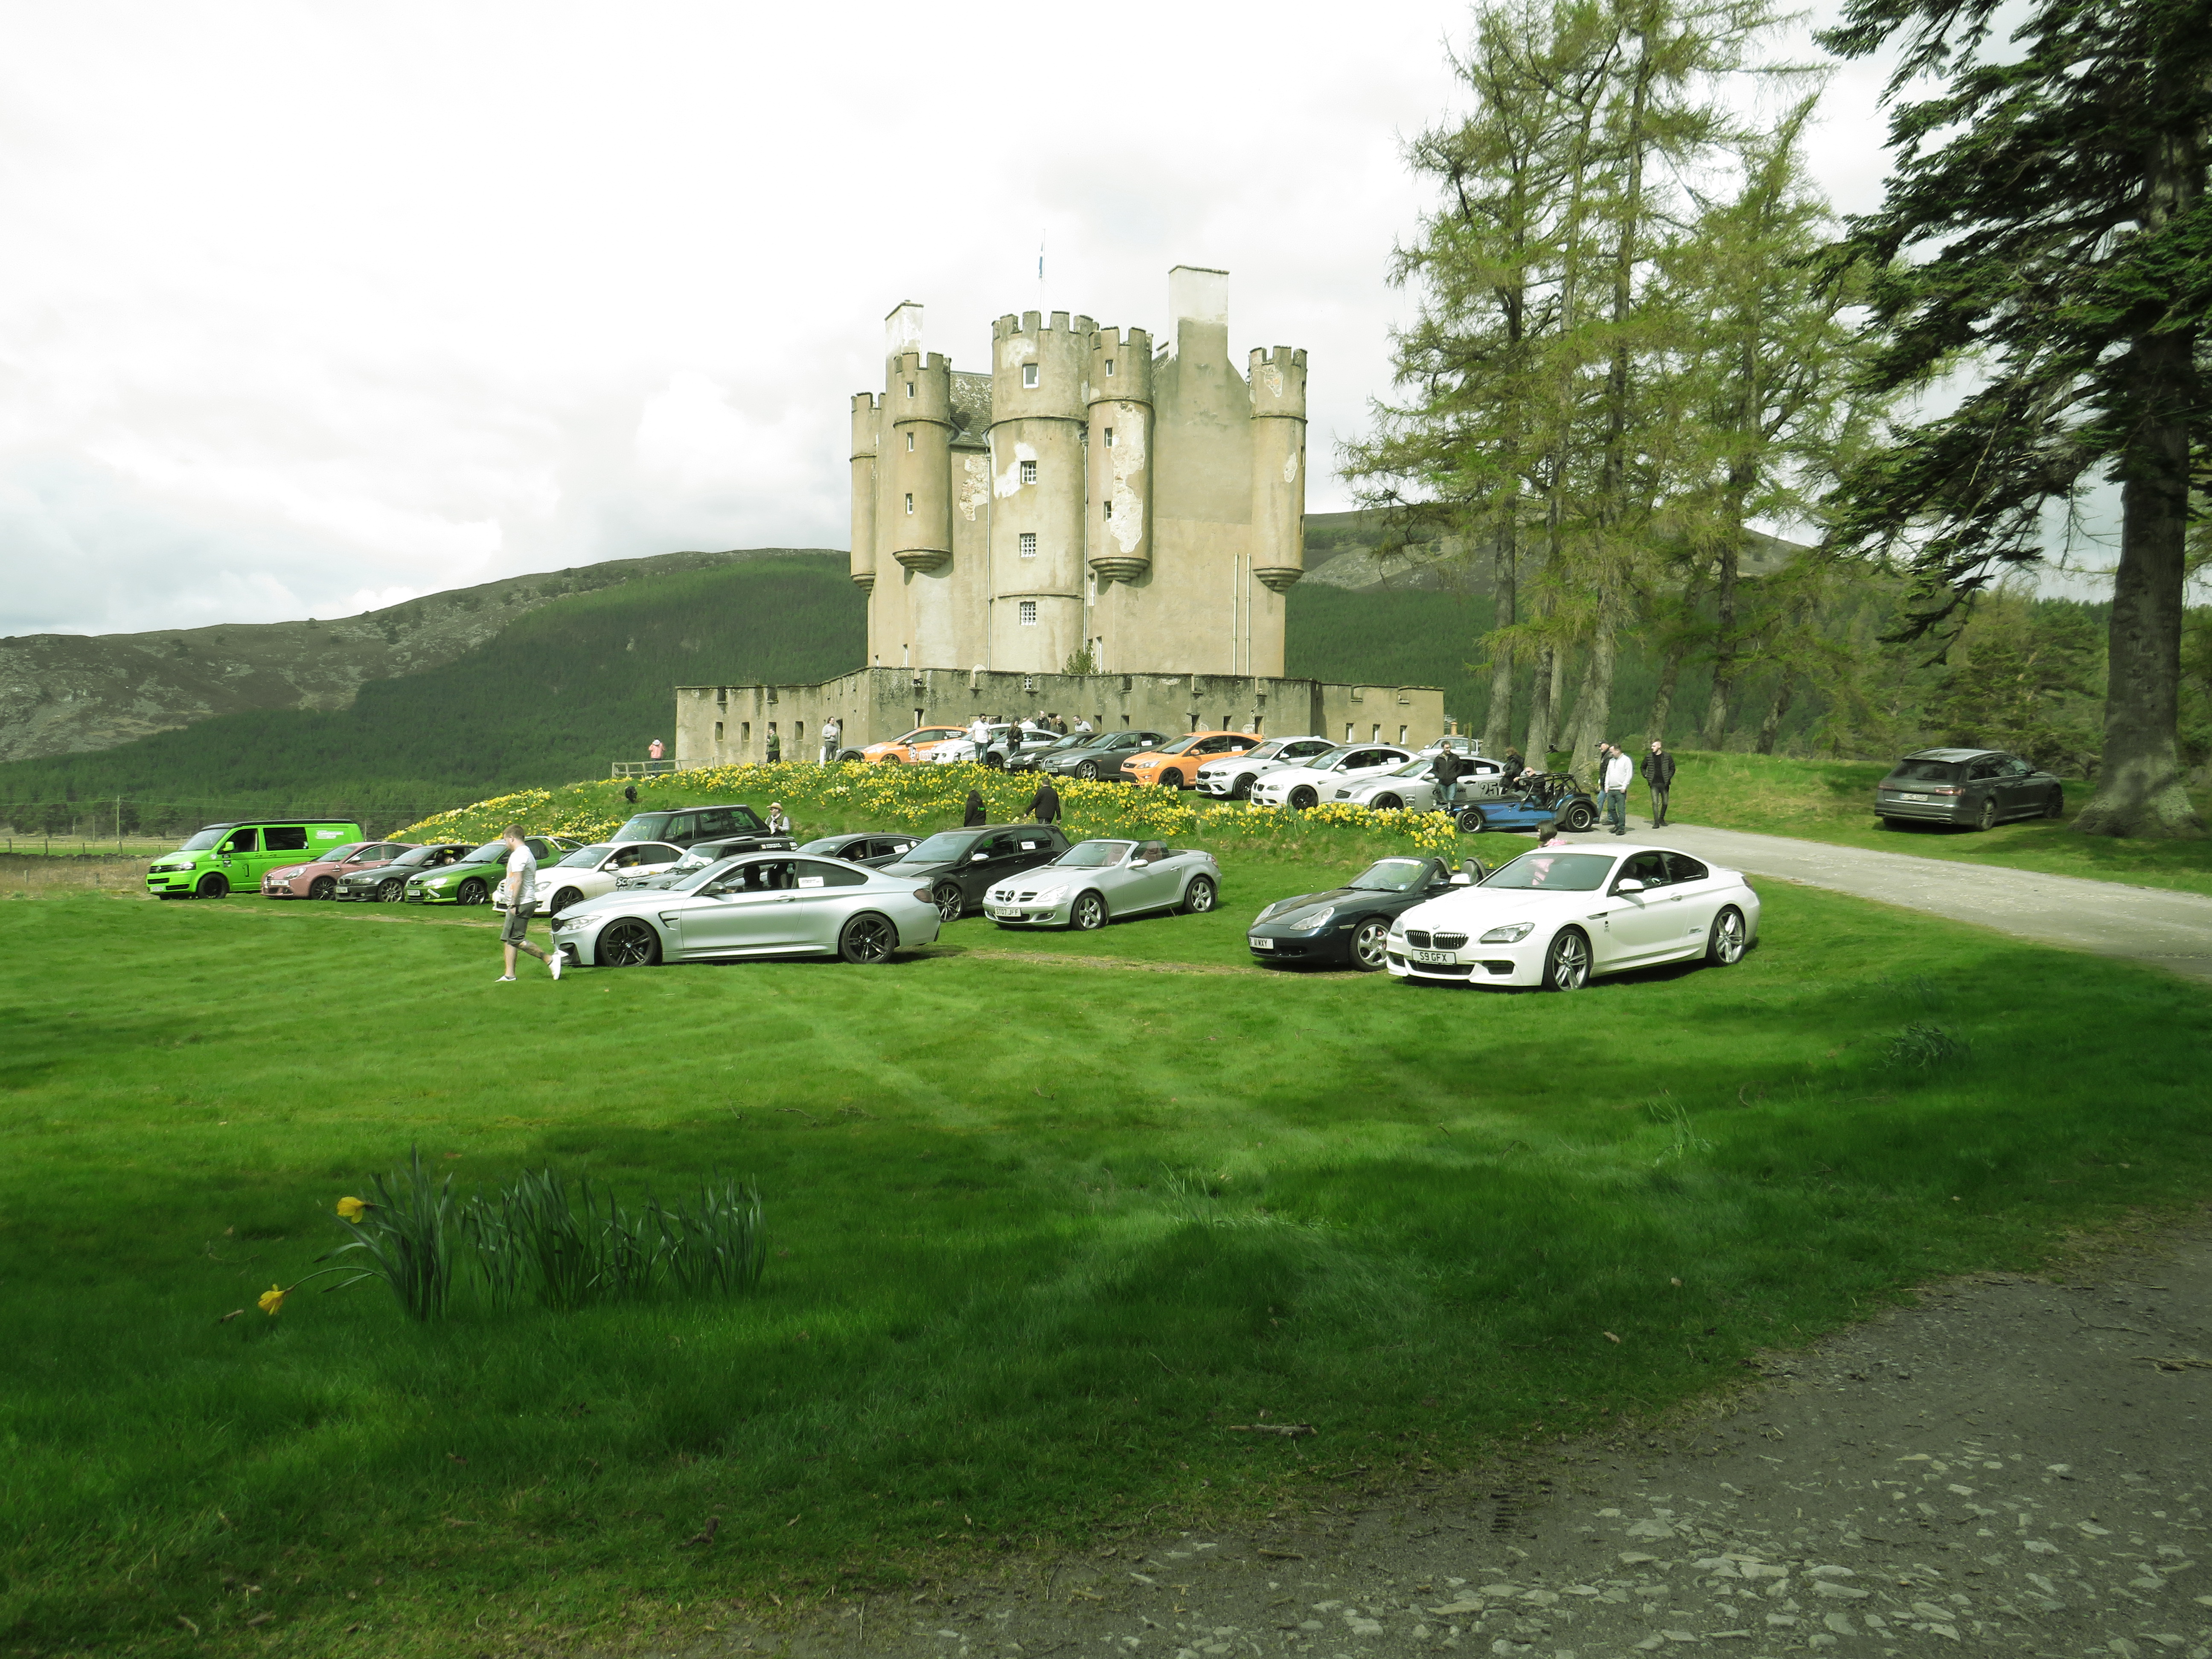 The convoy enjoys a break at Braemar Castle.